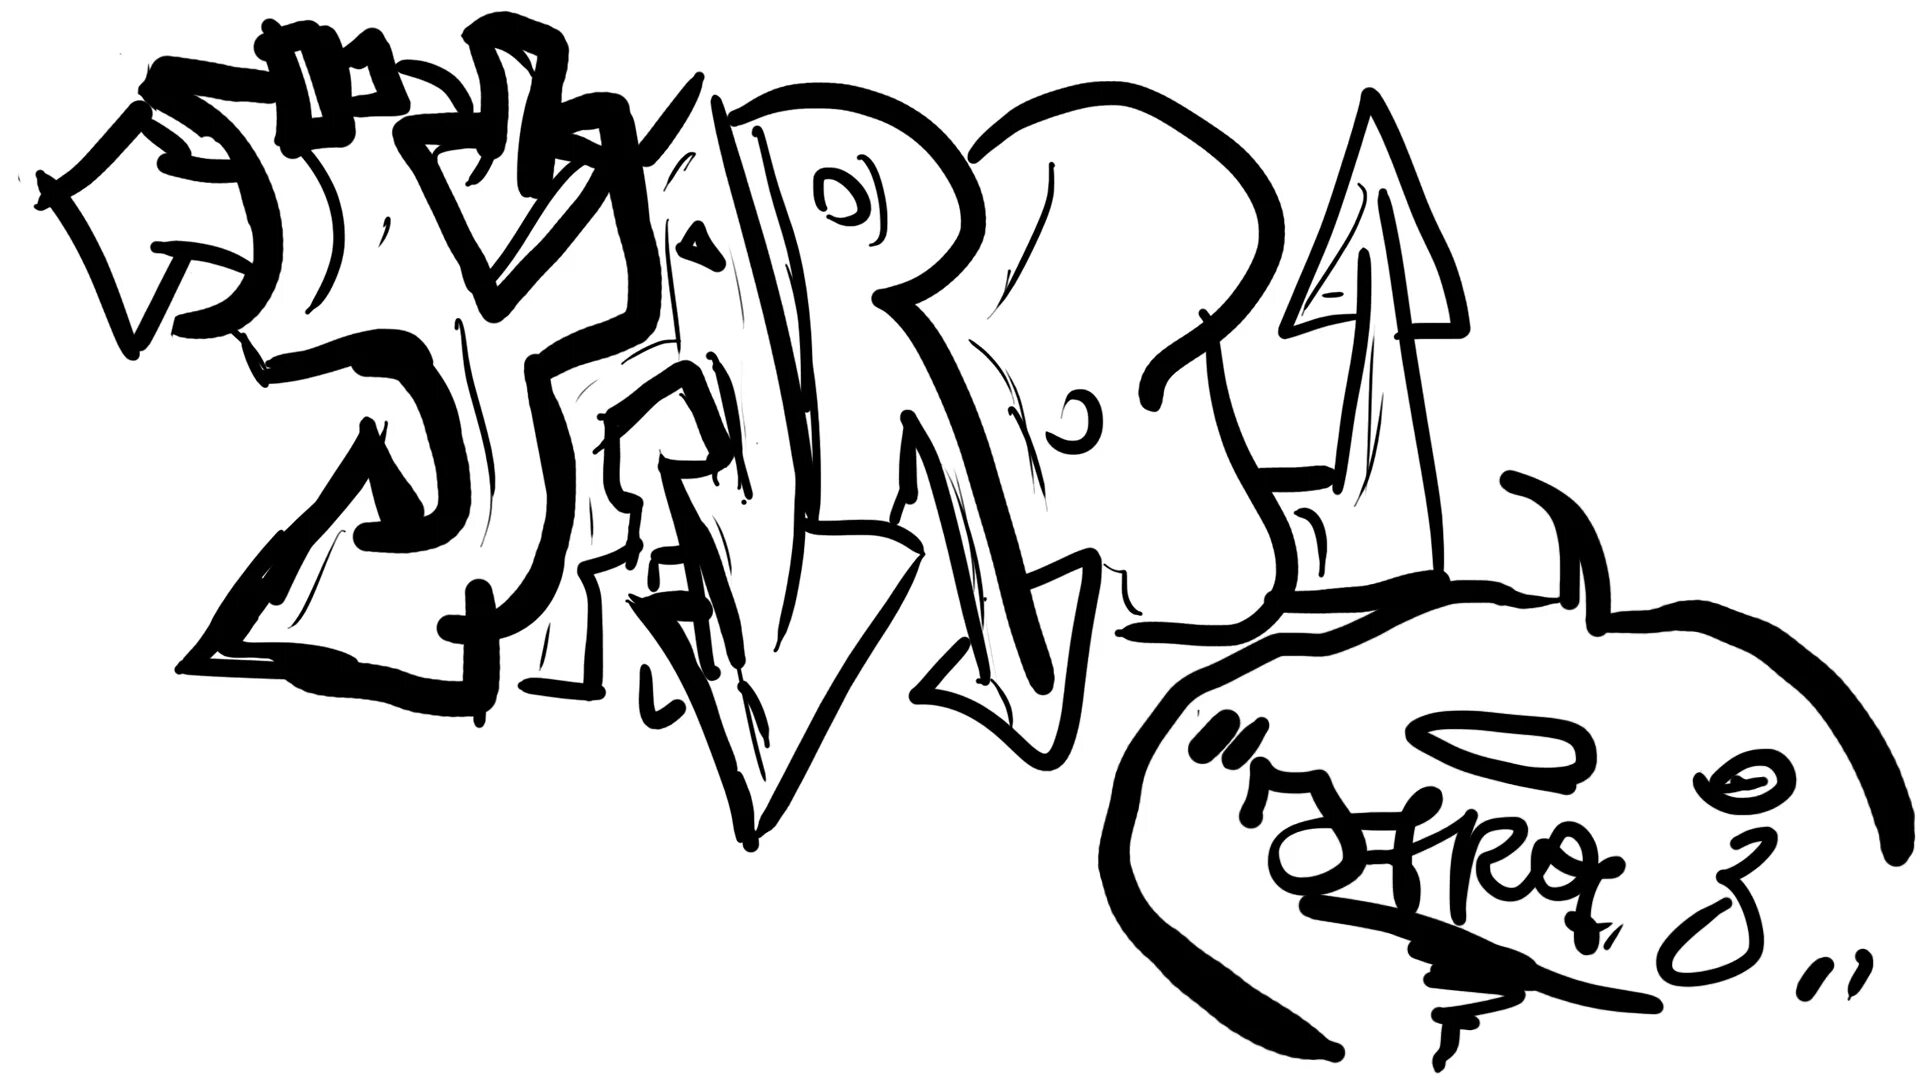 Graffiti sketch #12